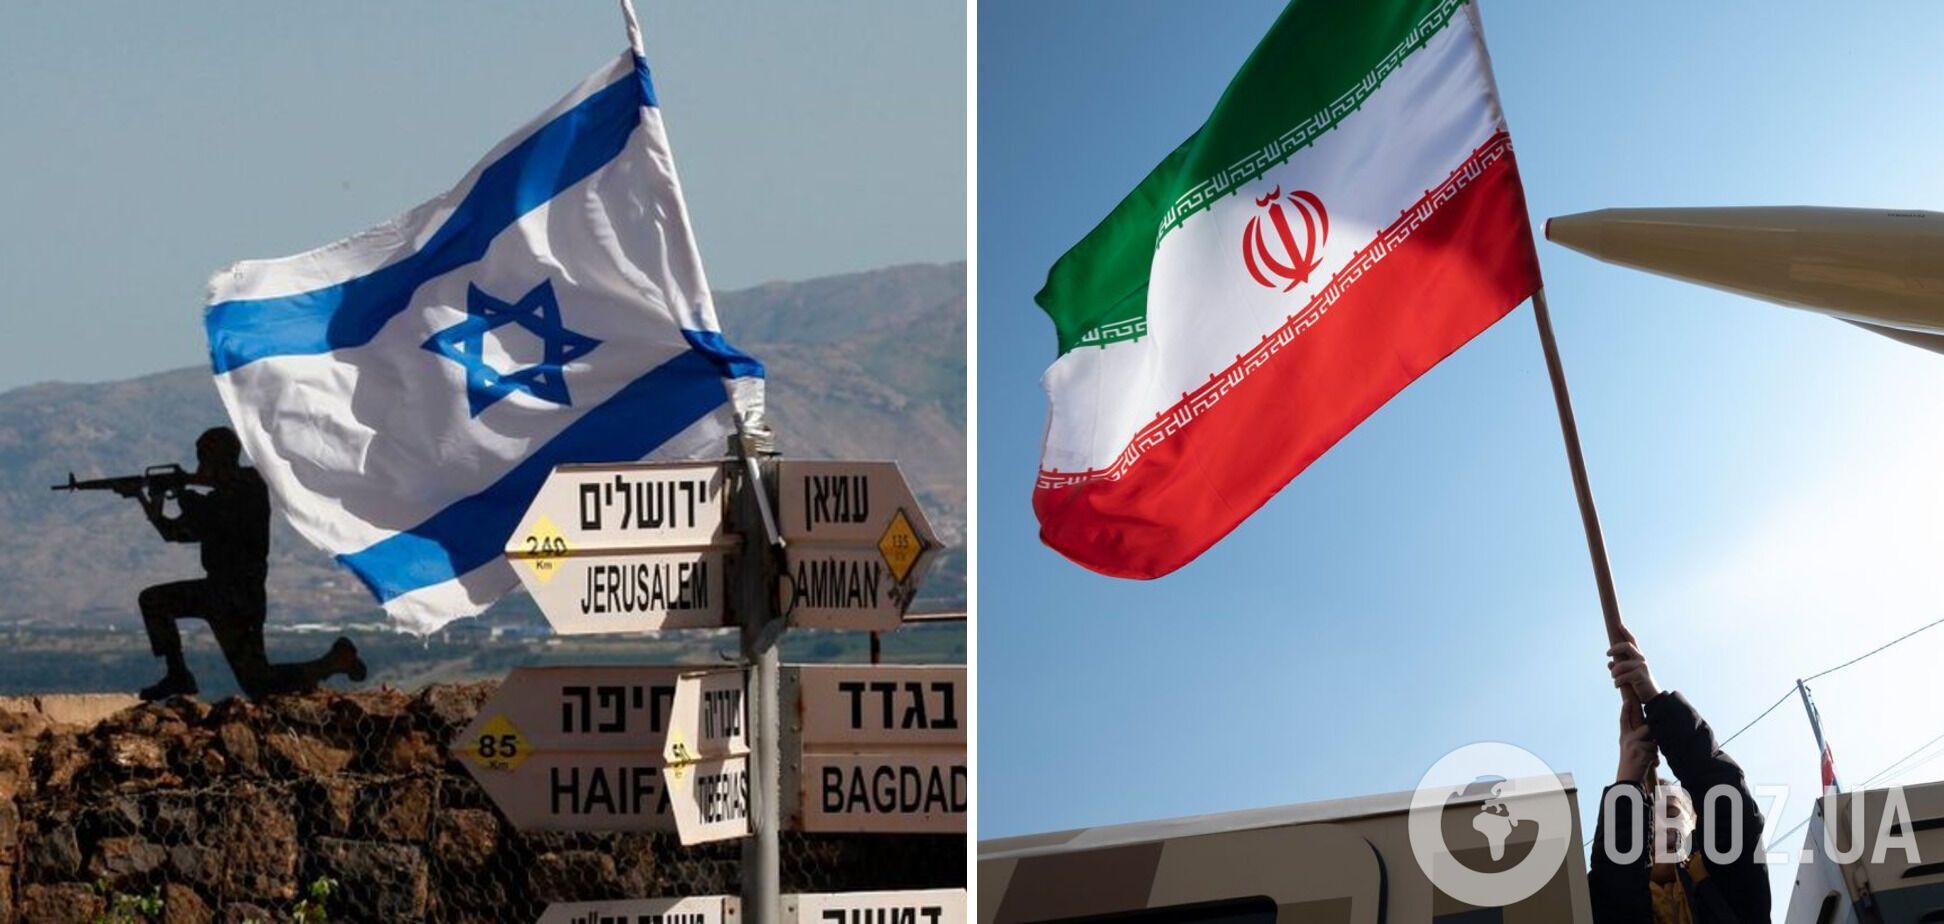 Сотня дронов и десятки ракет: Иран может атаковать Израиль в течение ближайших 24-48 часов - СМИ